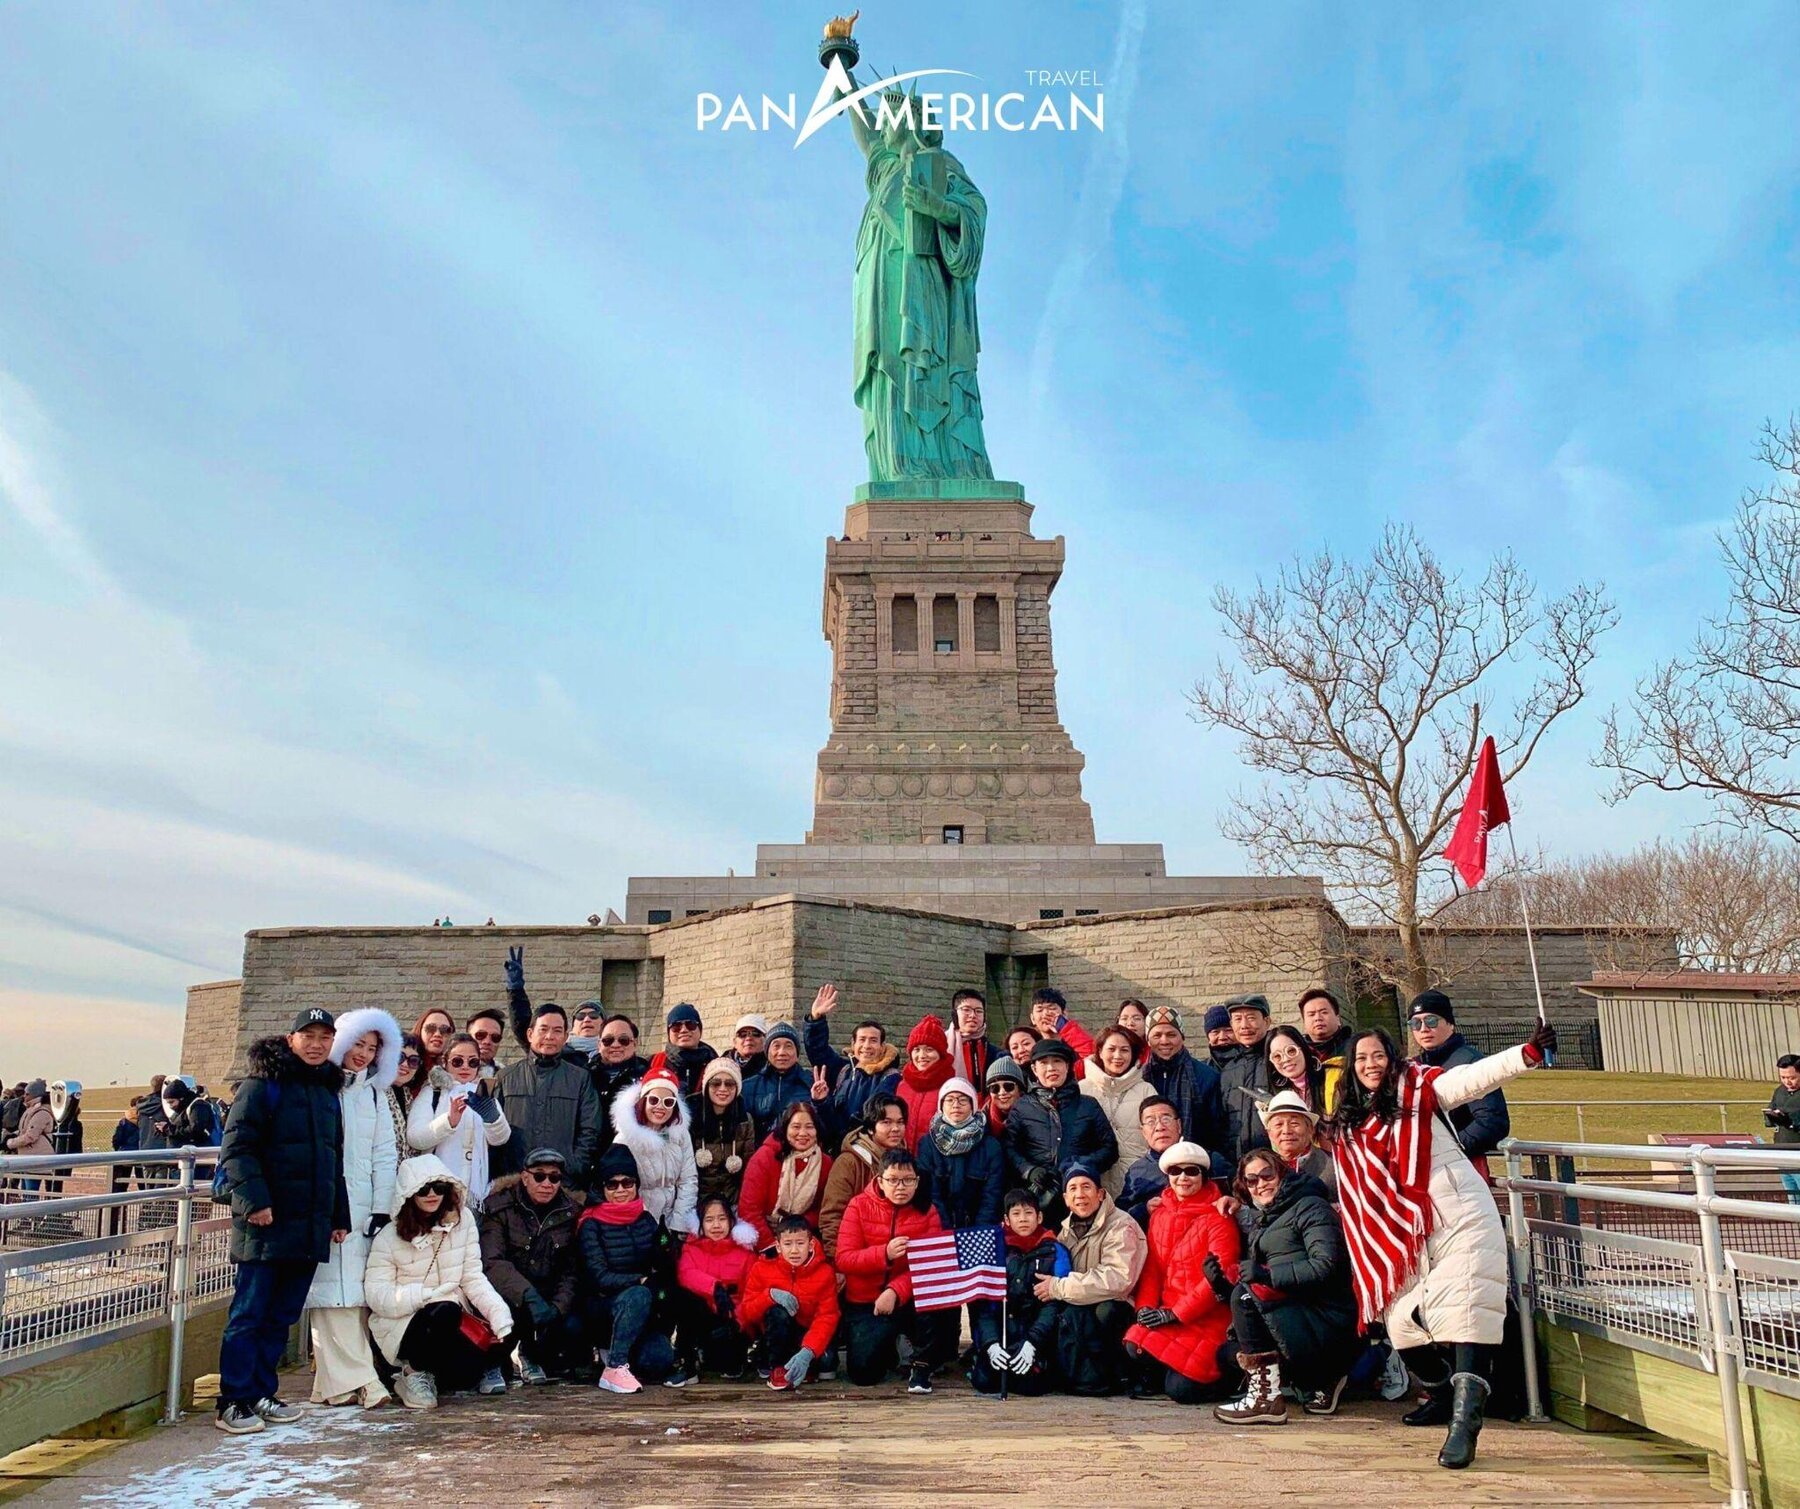 Chinh phục Giấc mơ Mỹ cùng Pan American Travel